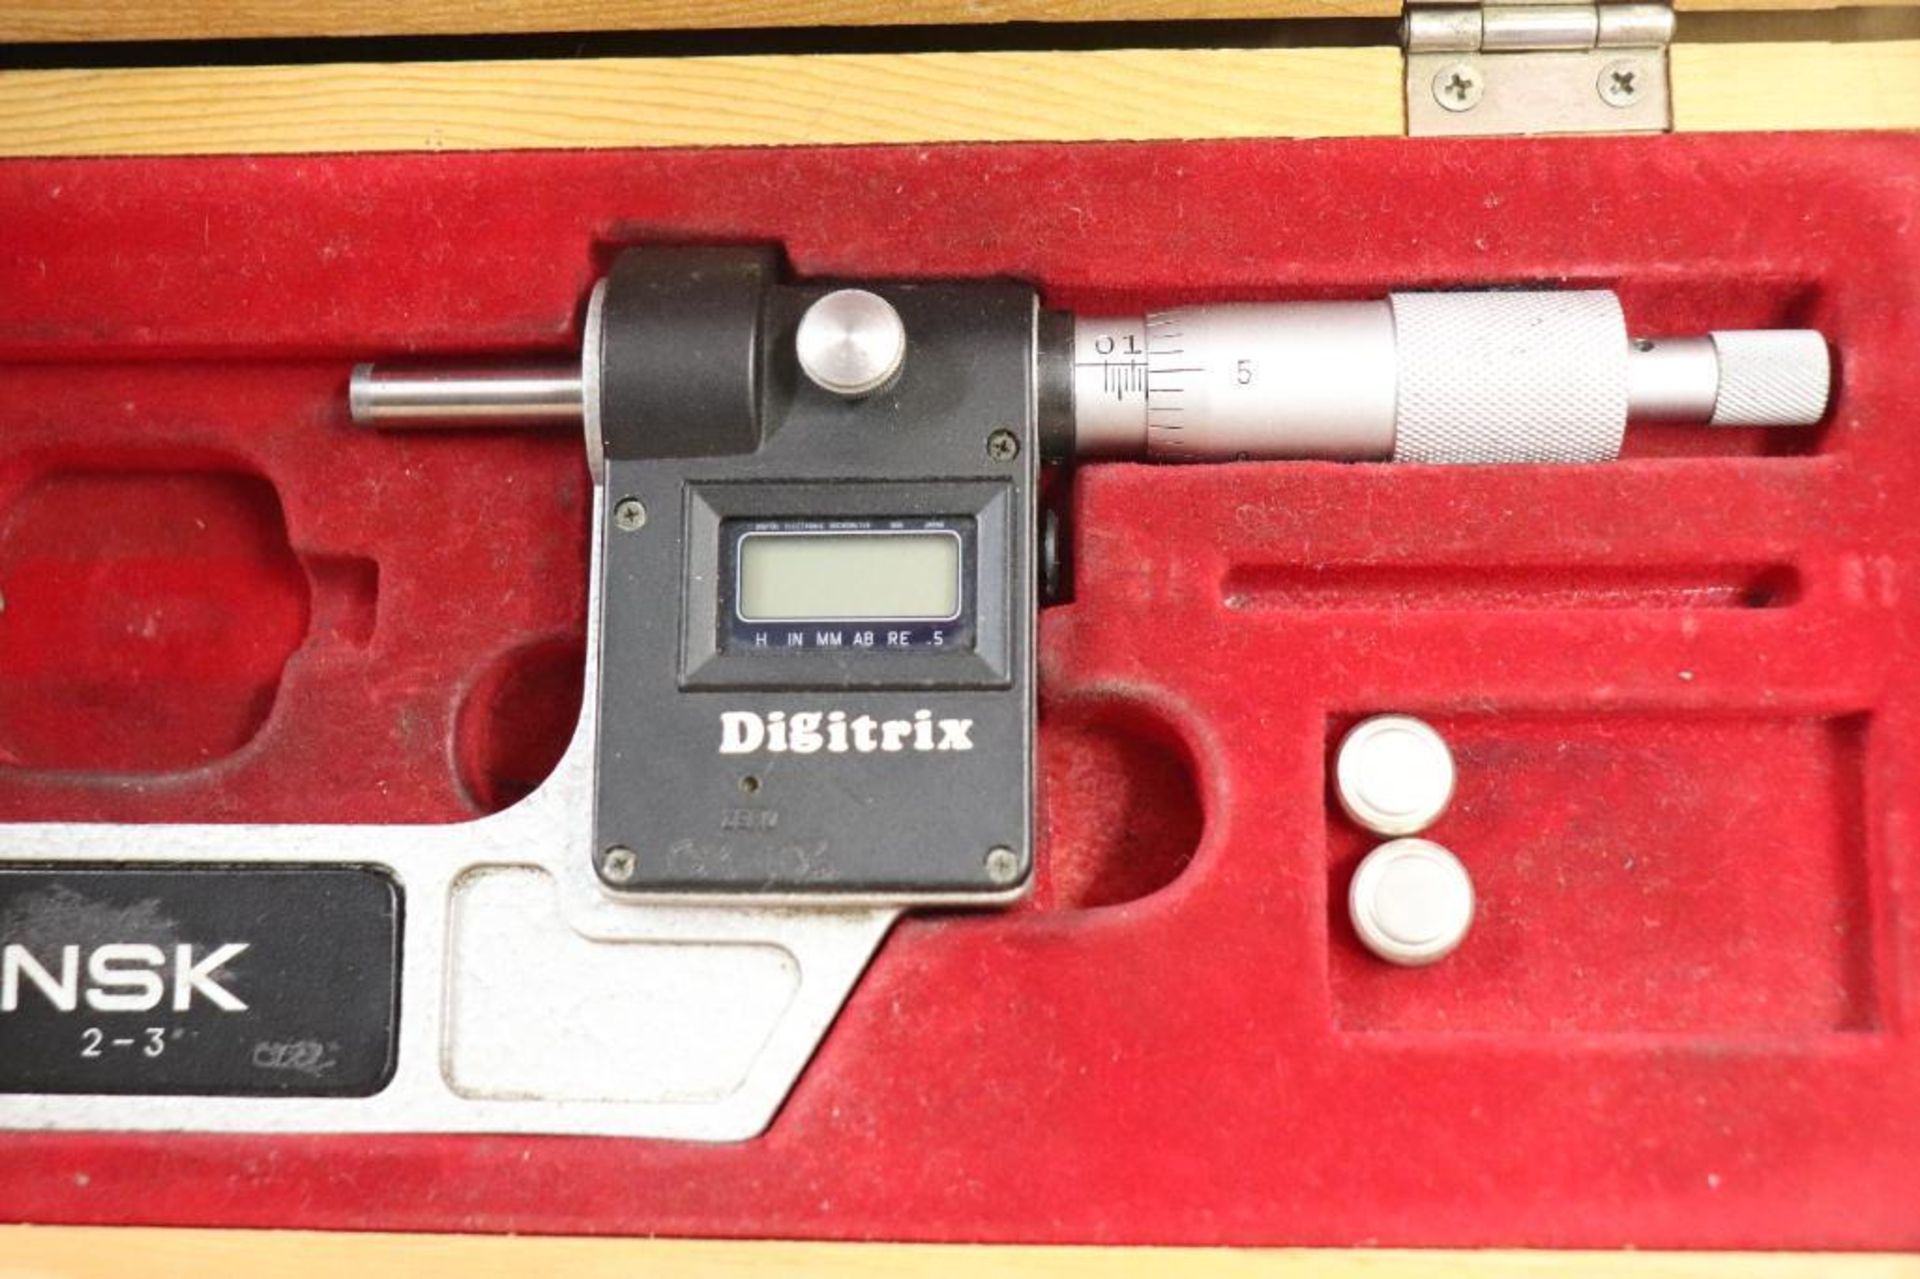 NSK Digitrix 2"-3" digital micrometer - Image 4 of 4